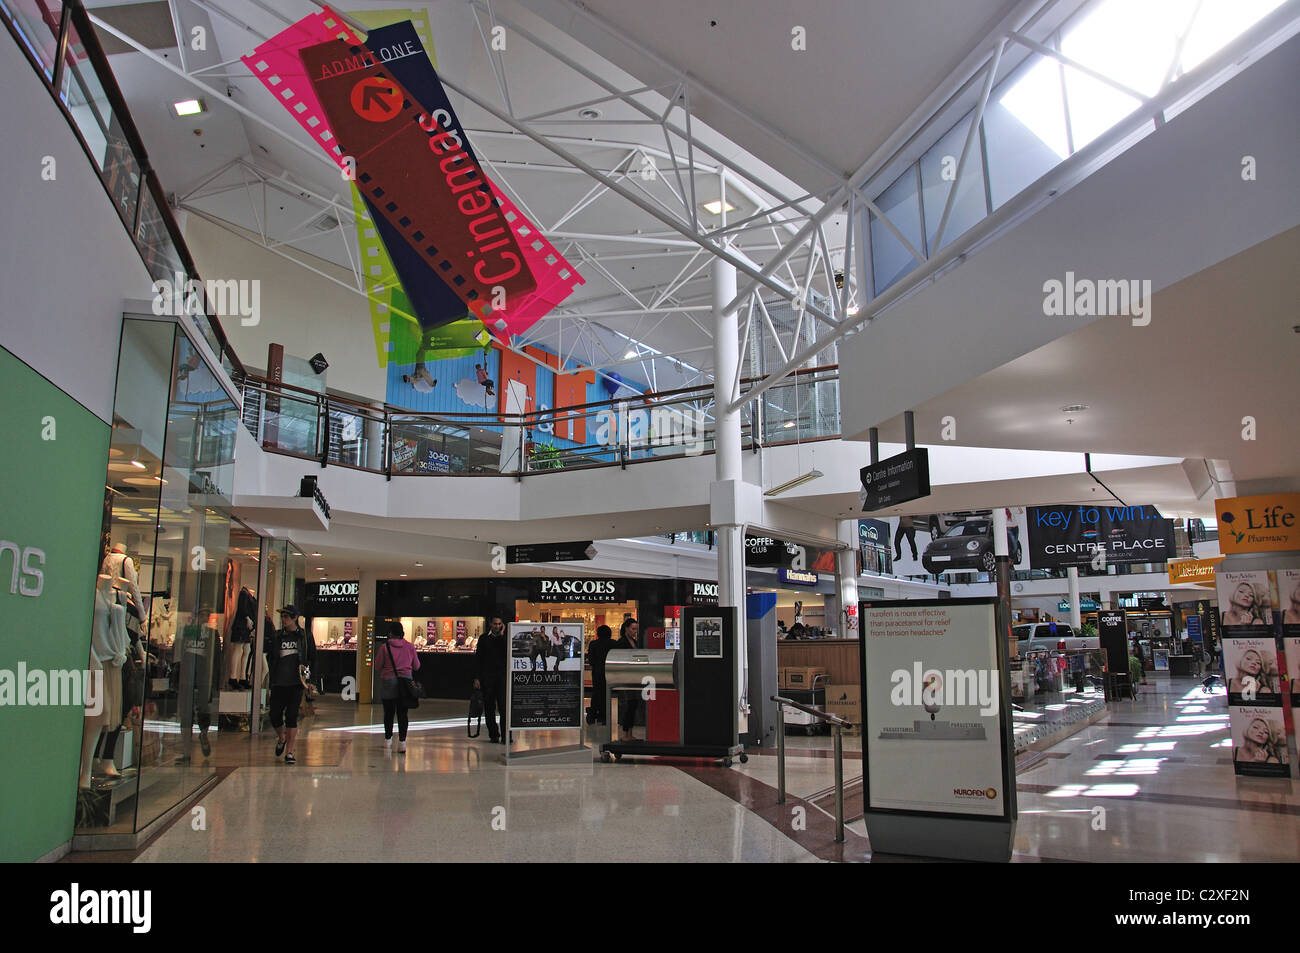 Centro Place Shopping Center interno, Victoria Street, Hamilton, regione di Waikato, Isola del nord, Nuova Zelanda Foto Stock